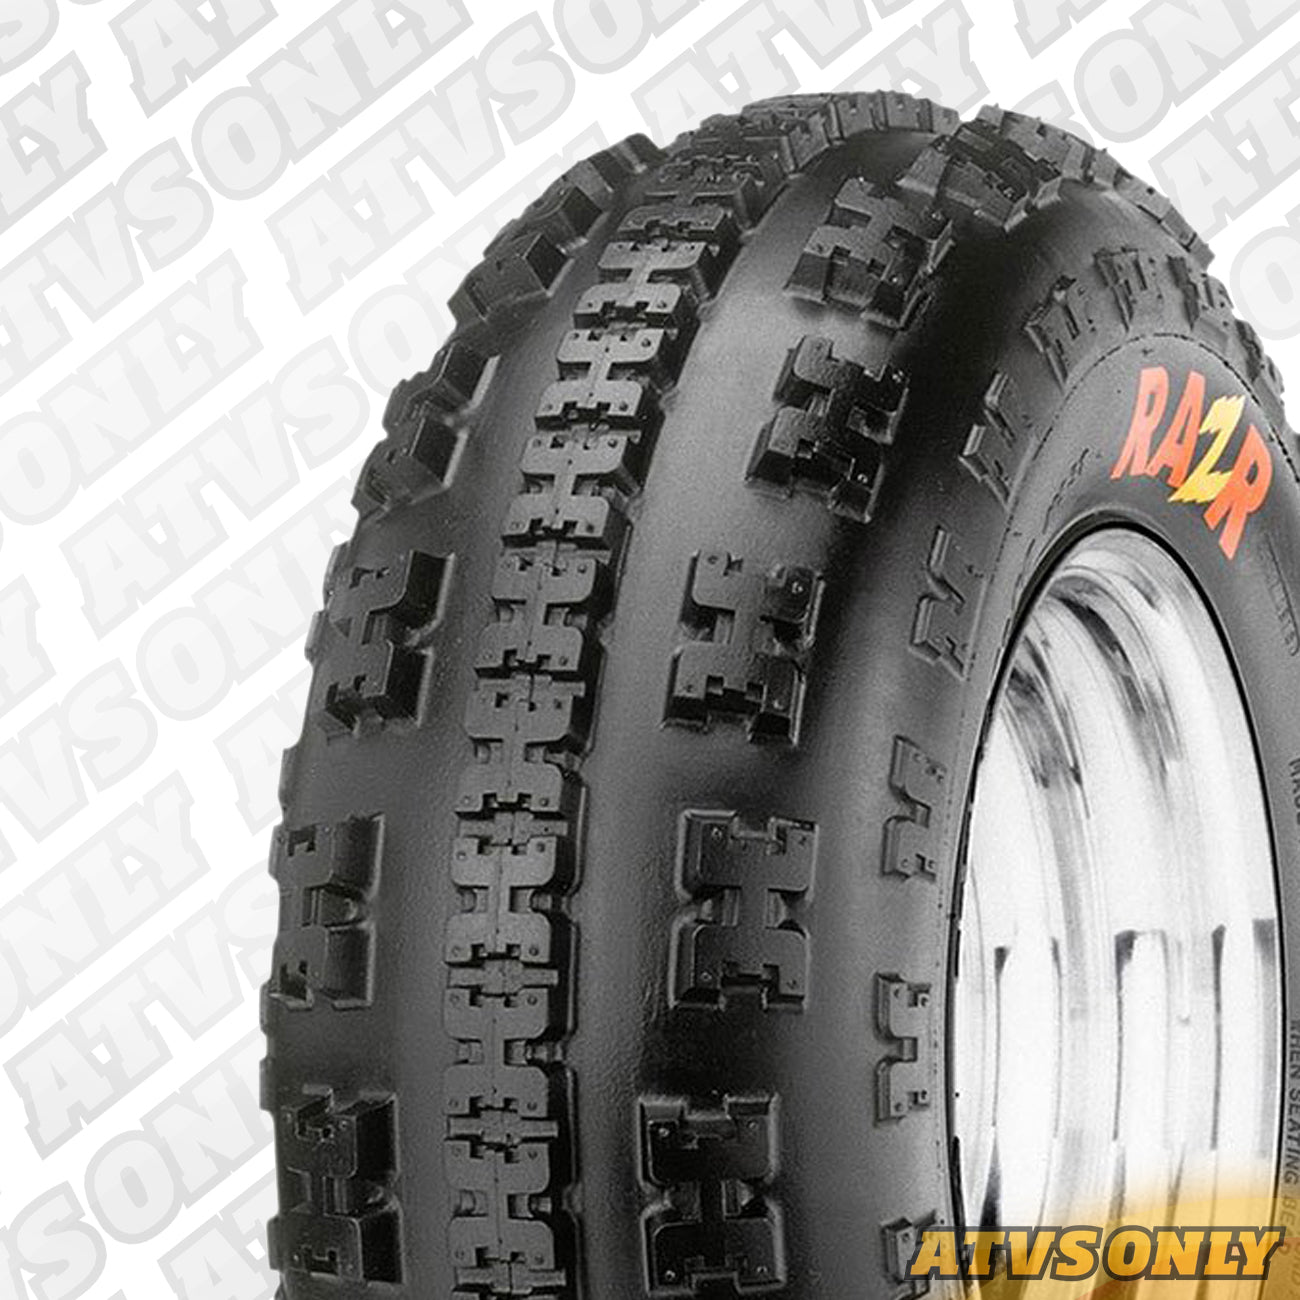 Tyres - RAZR MX M-932/M-931 (E Marked) 10”